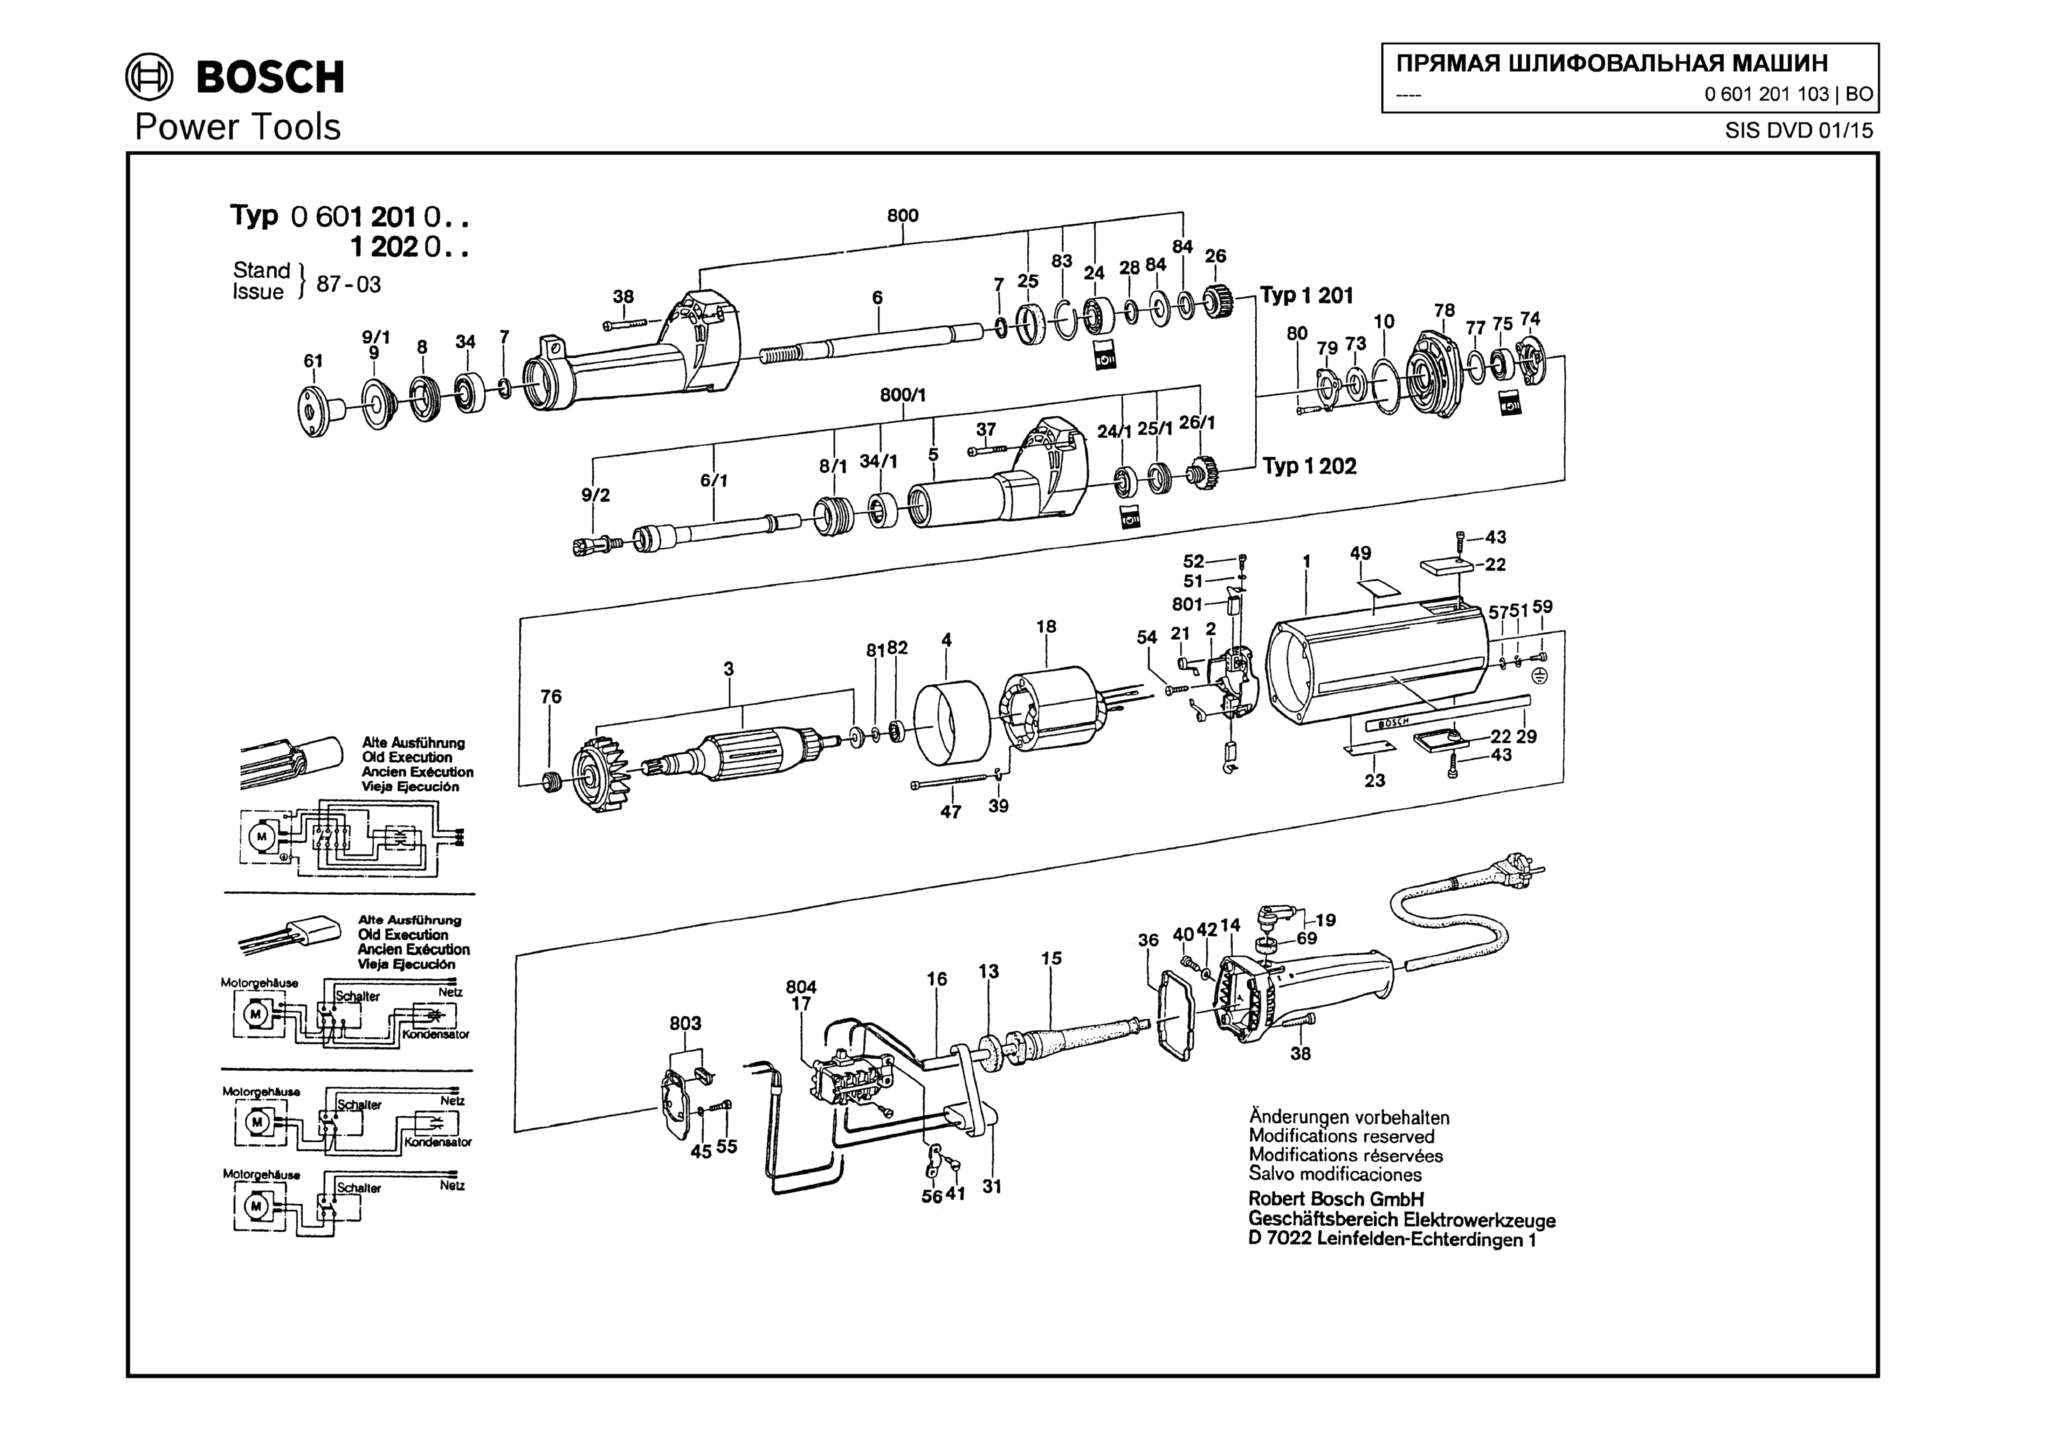 Запчасти, схема и деталировка Bosch (ТИП 0601201103)